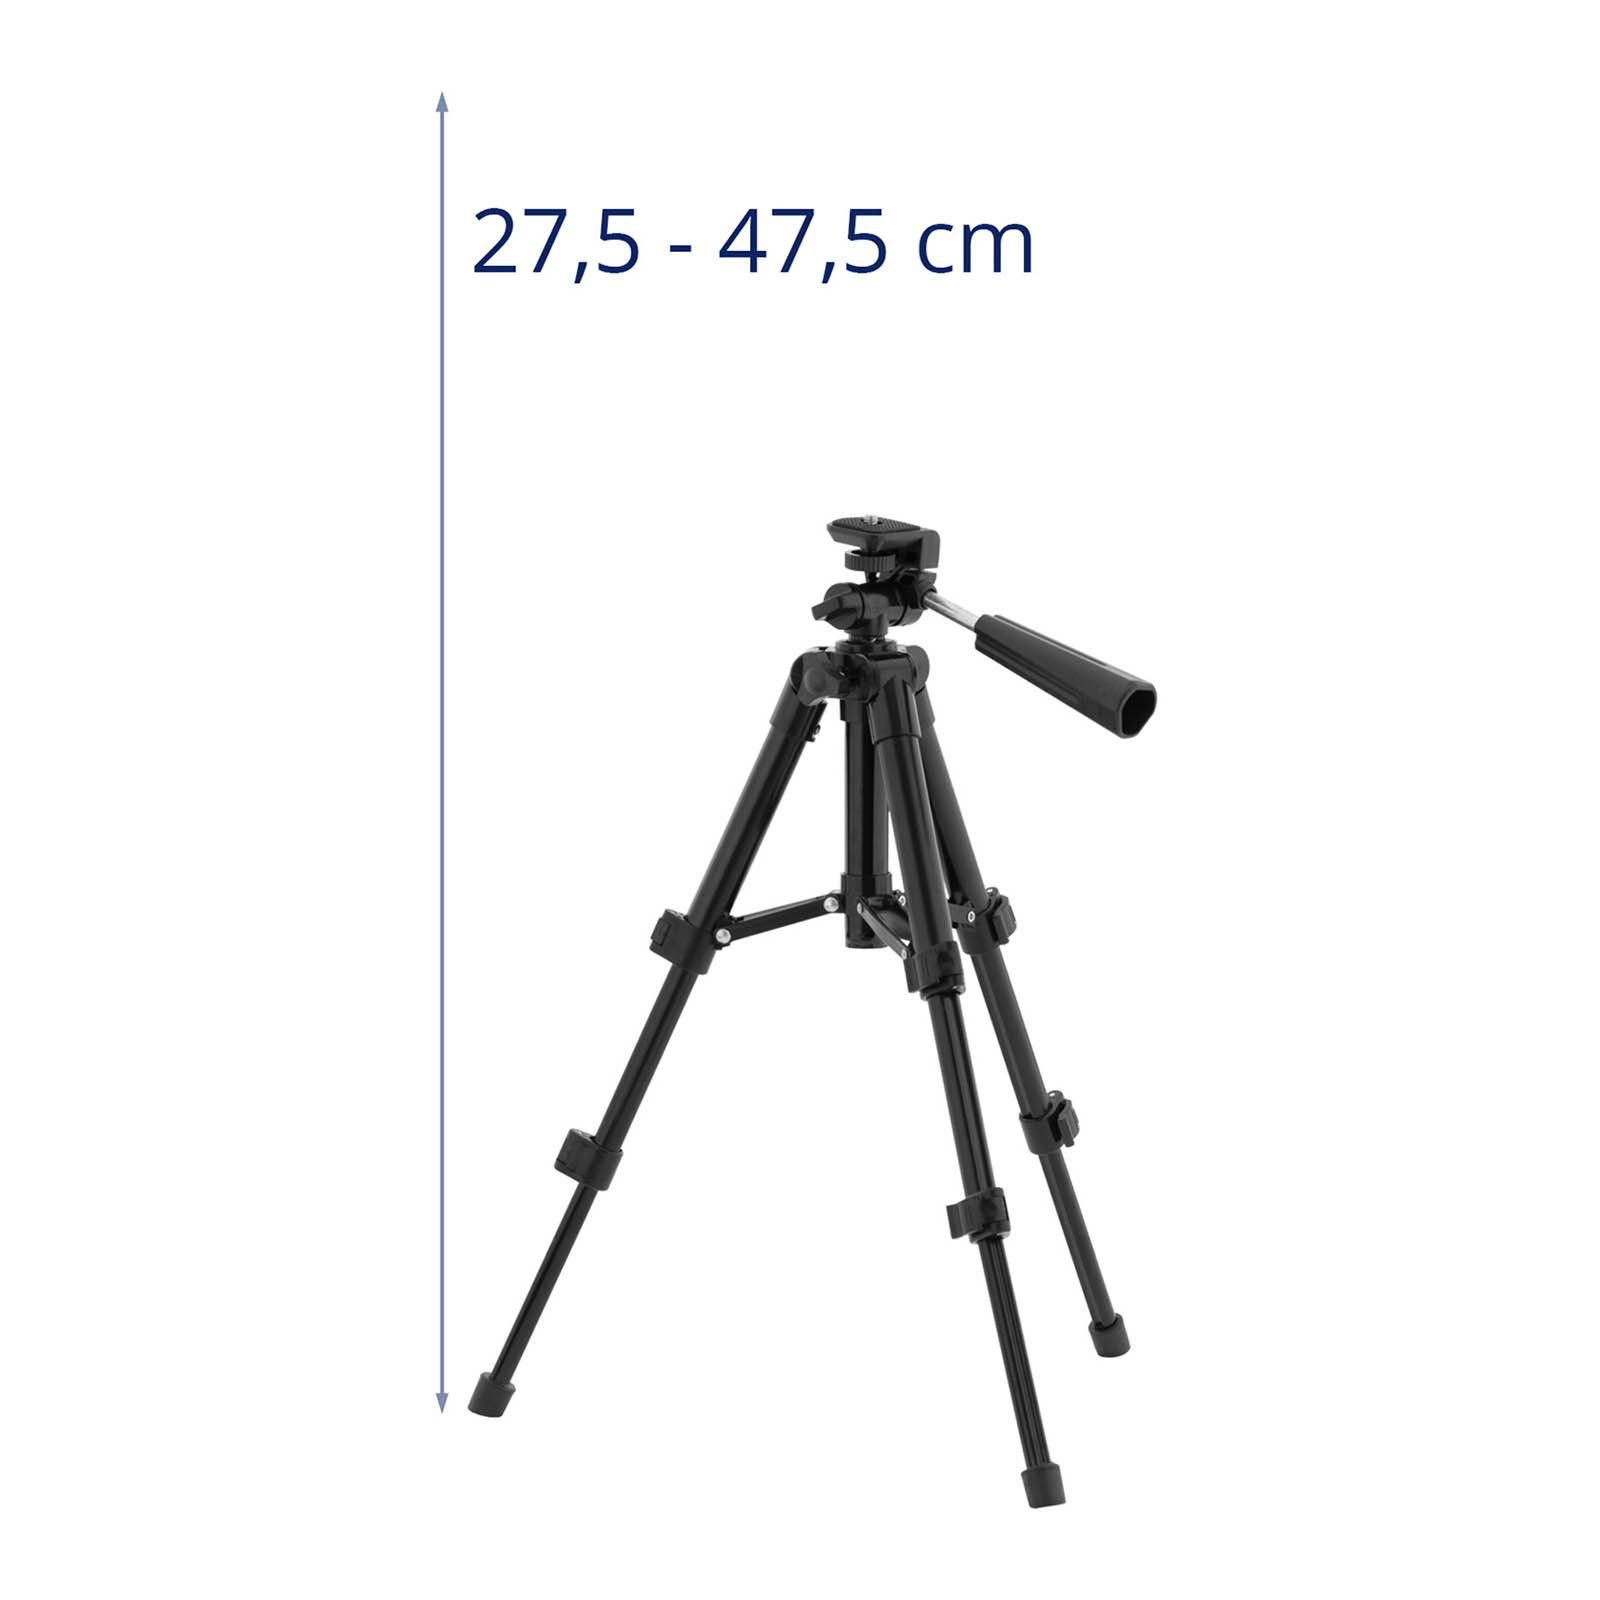 276-474 Systems Dreibeinstativ Steinberg Stativ 1/4"-Gewinde Kamerastativ mm Tripod universal